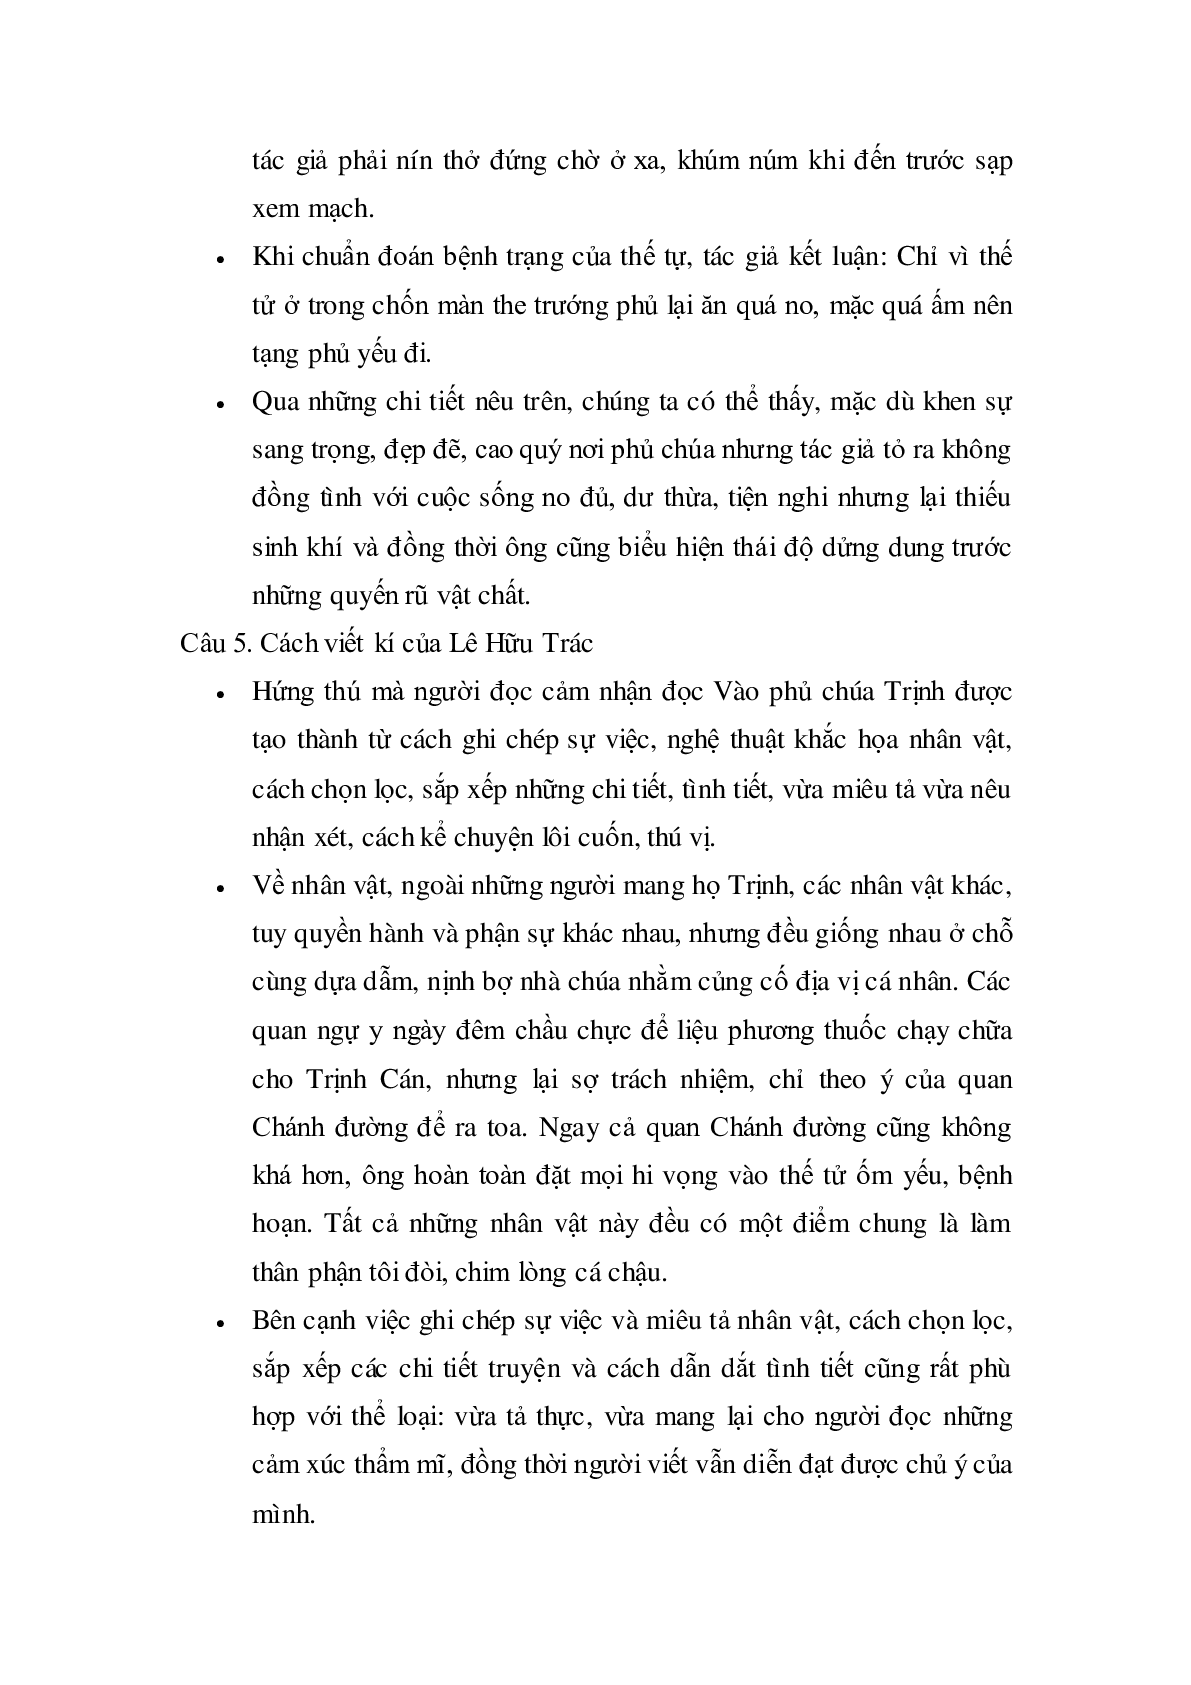 Soạn bài Vào phủ chúa Trịnh của Lê Hữu Trác - ngắn nhất Soạn văn 11 (trang 5)